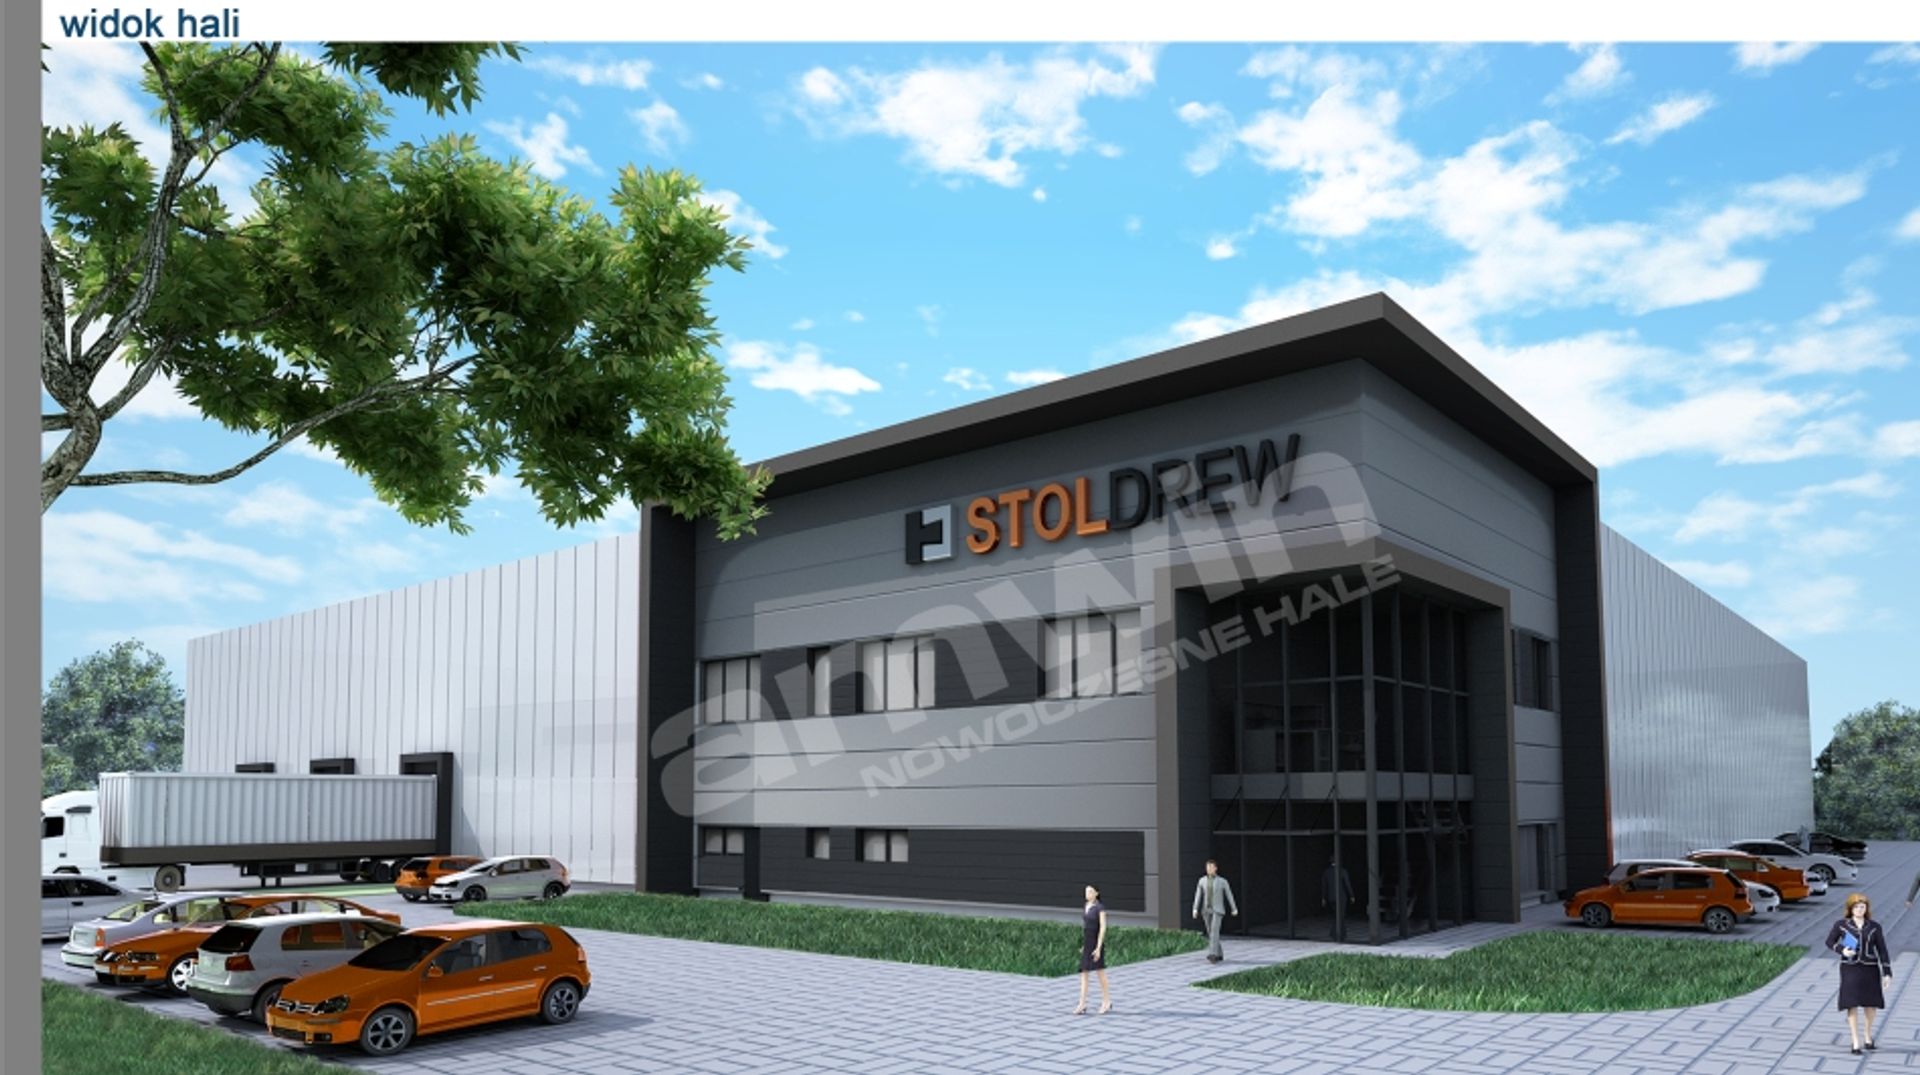  Optymalne rozwiązania zapewniające bezpieczeństwo i wysoką ergonomię pracy na przykładzie projektu i budowy hali magazynowo-produkcyjnej dla firmy Stoldrew.